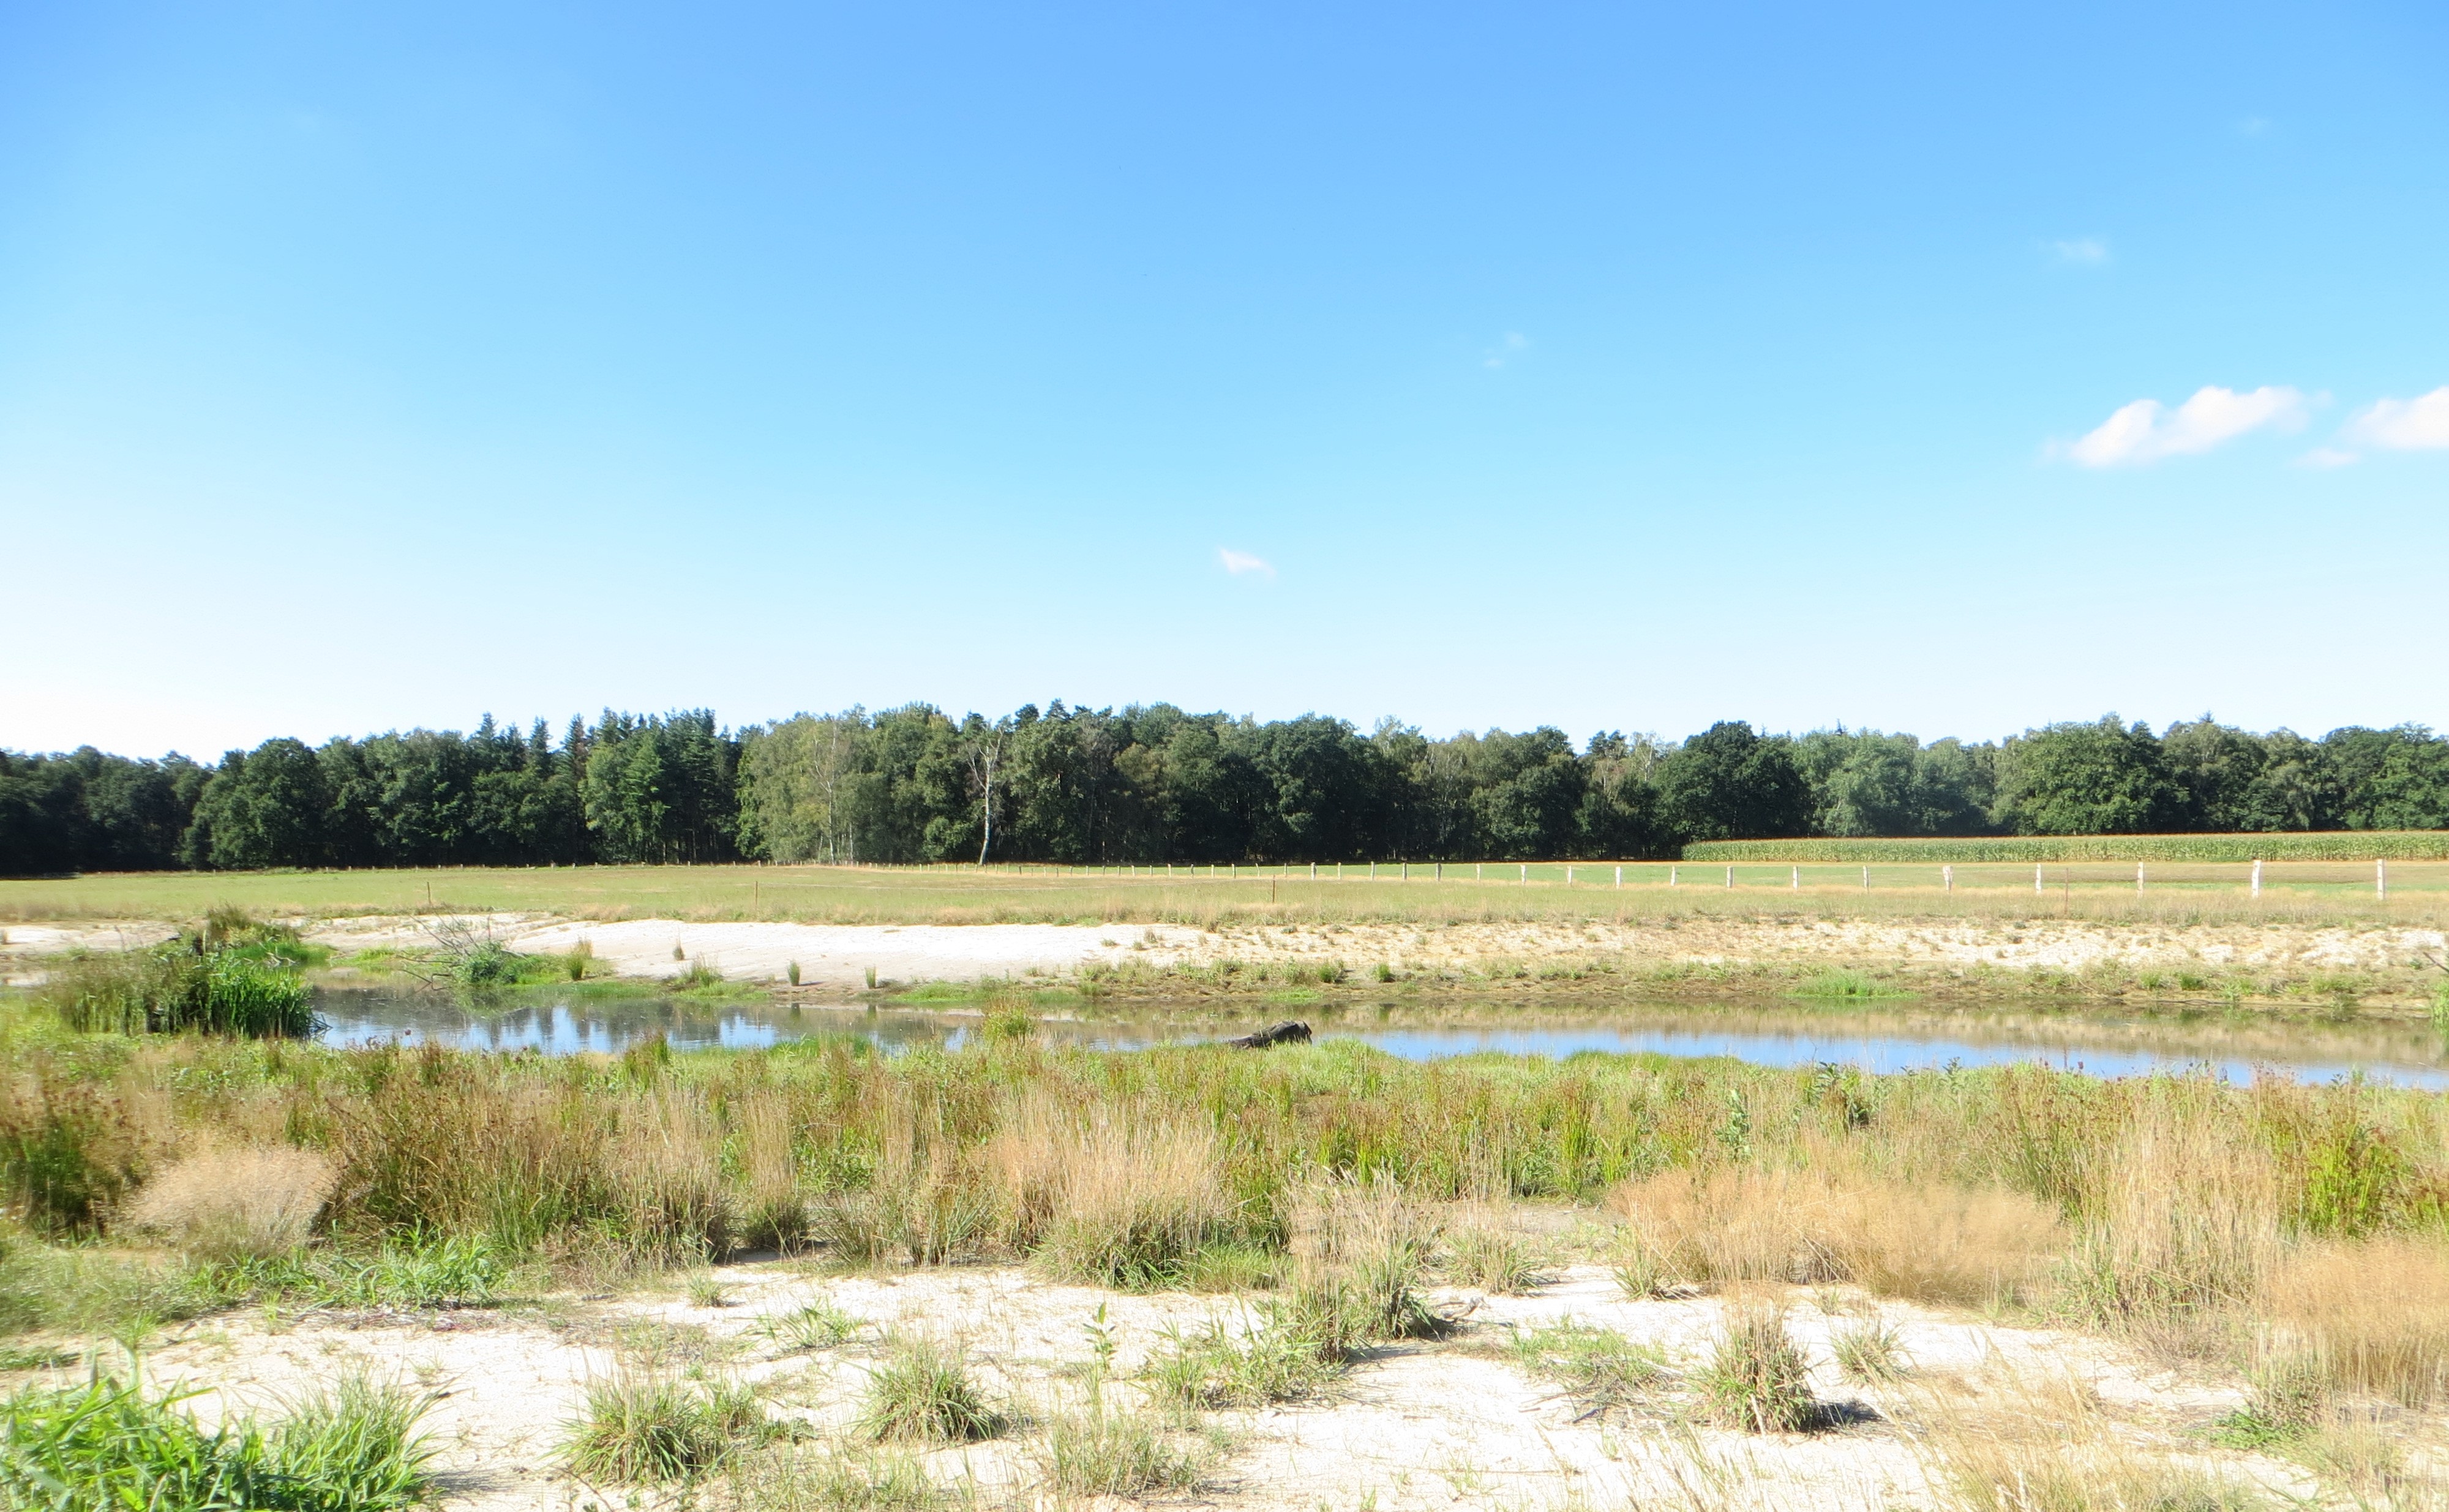 Ein breiteres geradverlaufendes Gewässer in der Bildmitte mit sandigem spärlich bewachsenem Uferhang. Im Hintergrund befindet sich ein Waldgebiet.